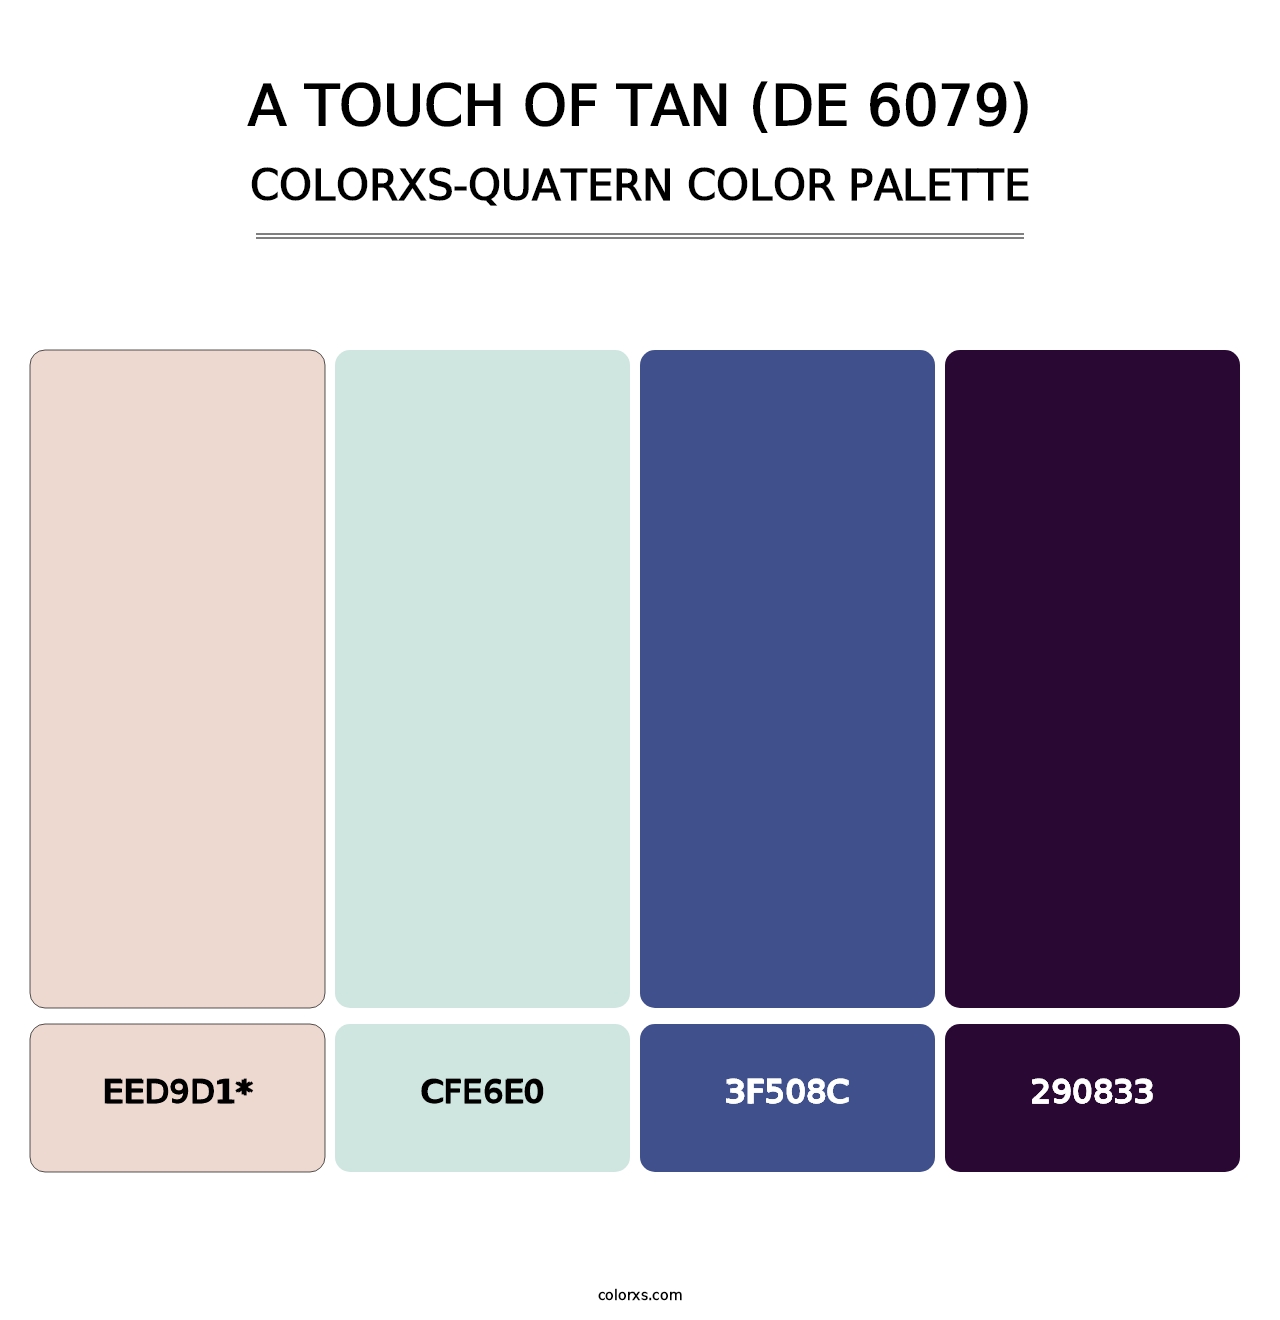 A Touch of Tan (DE 6079) - Colorxs Quad Palette